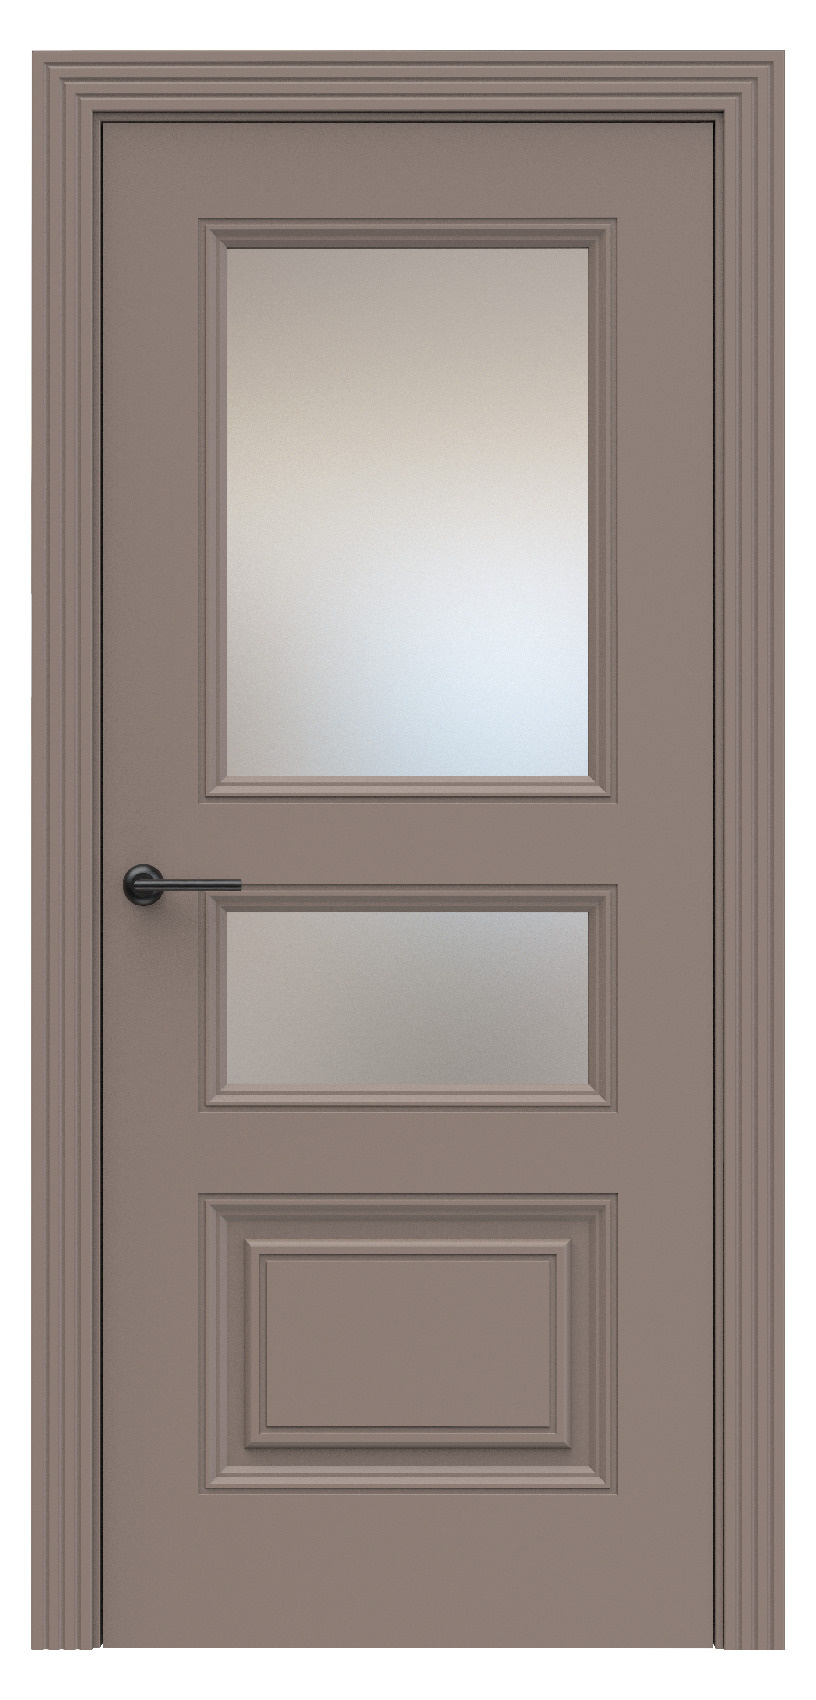 Questdoors Межкомнатная дверь QB4, арт. 17905 - фото №1